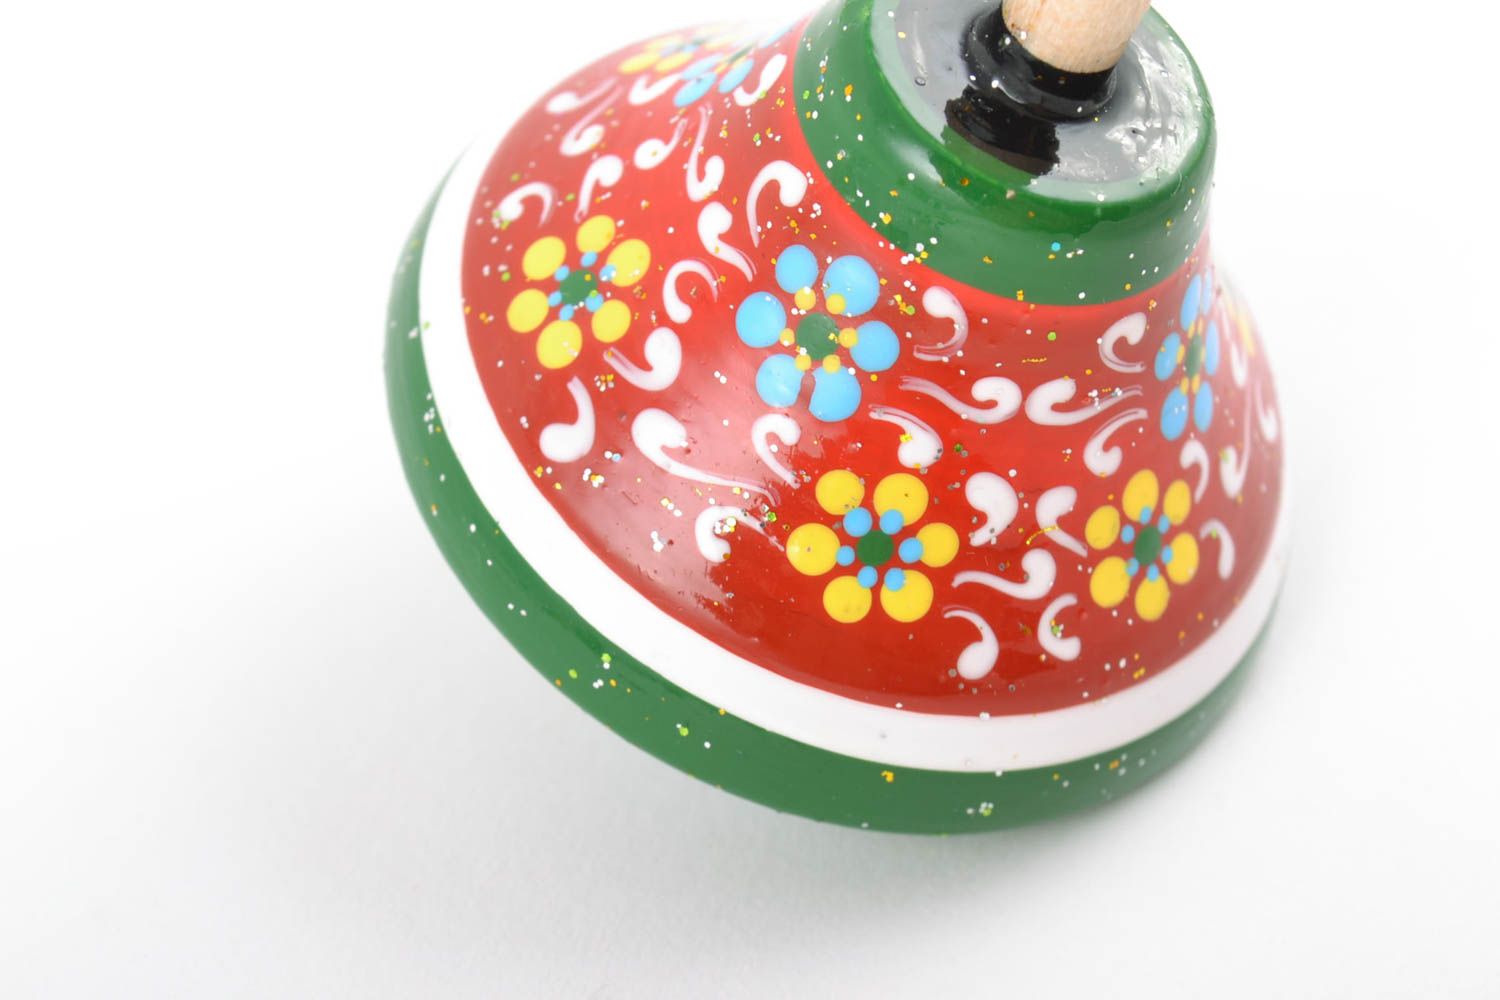 Деревянная эко-игрушка волчок ручной работы с росписью безопасными красками фото 5